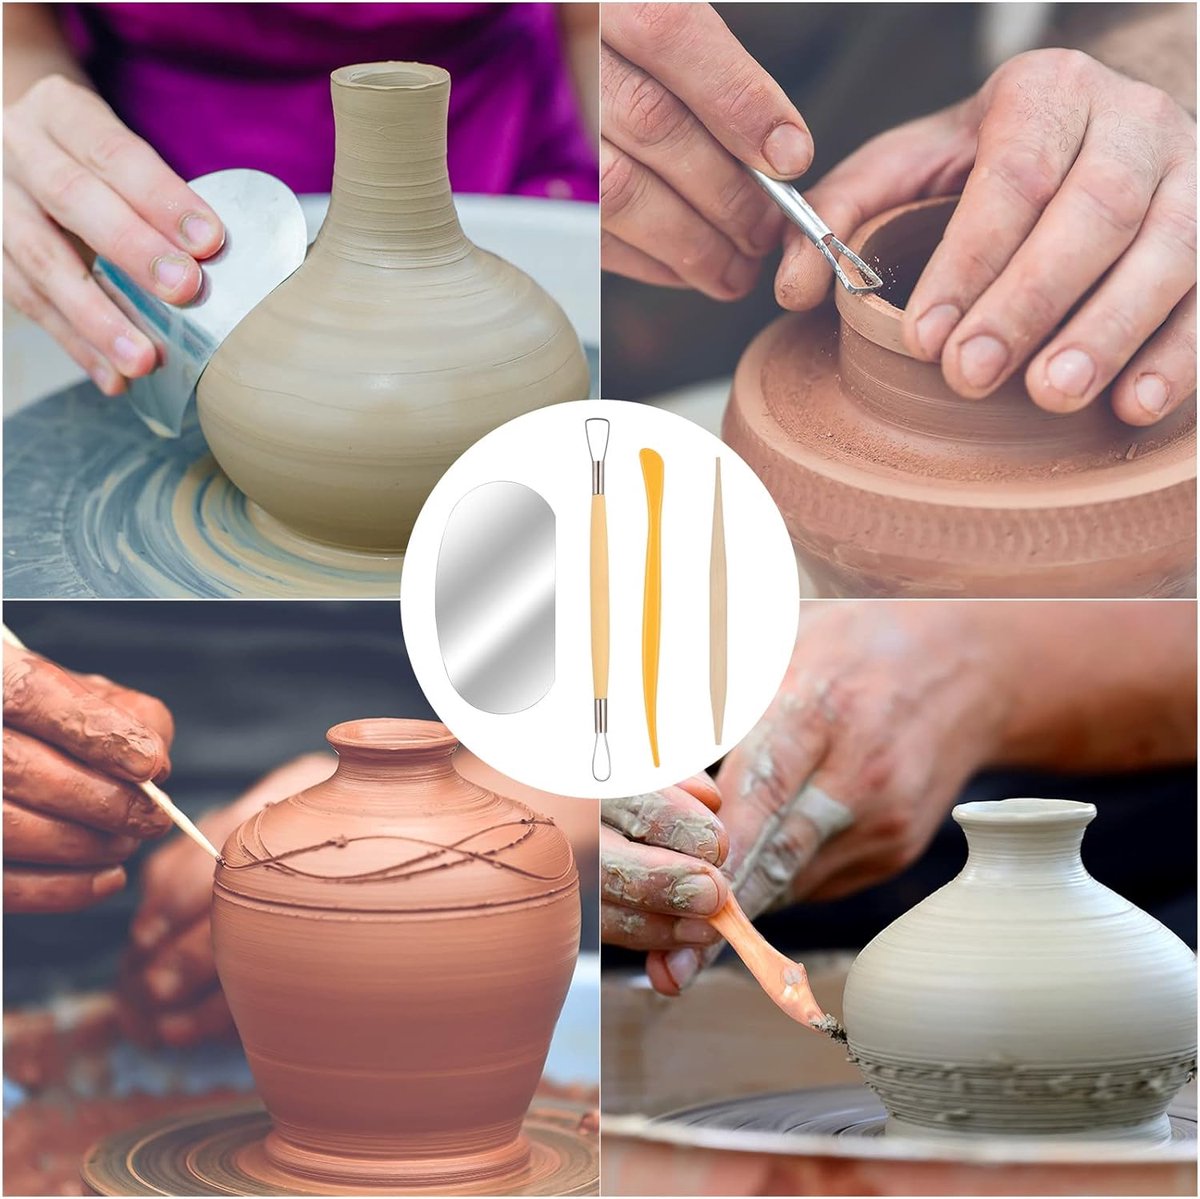 Kit d'outils poterie, argile polymère céramique, kit sculpture, modelage,  poterie, d'argile sculpture avec sac